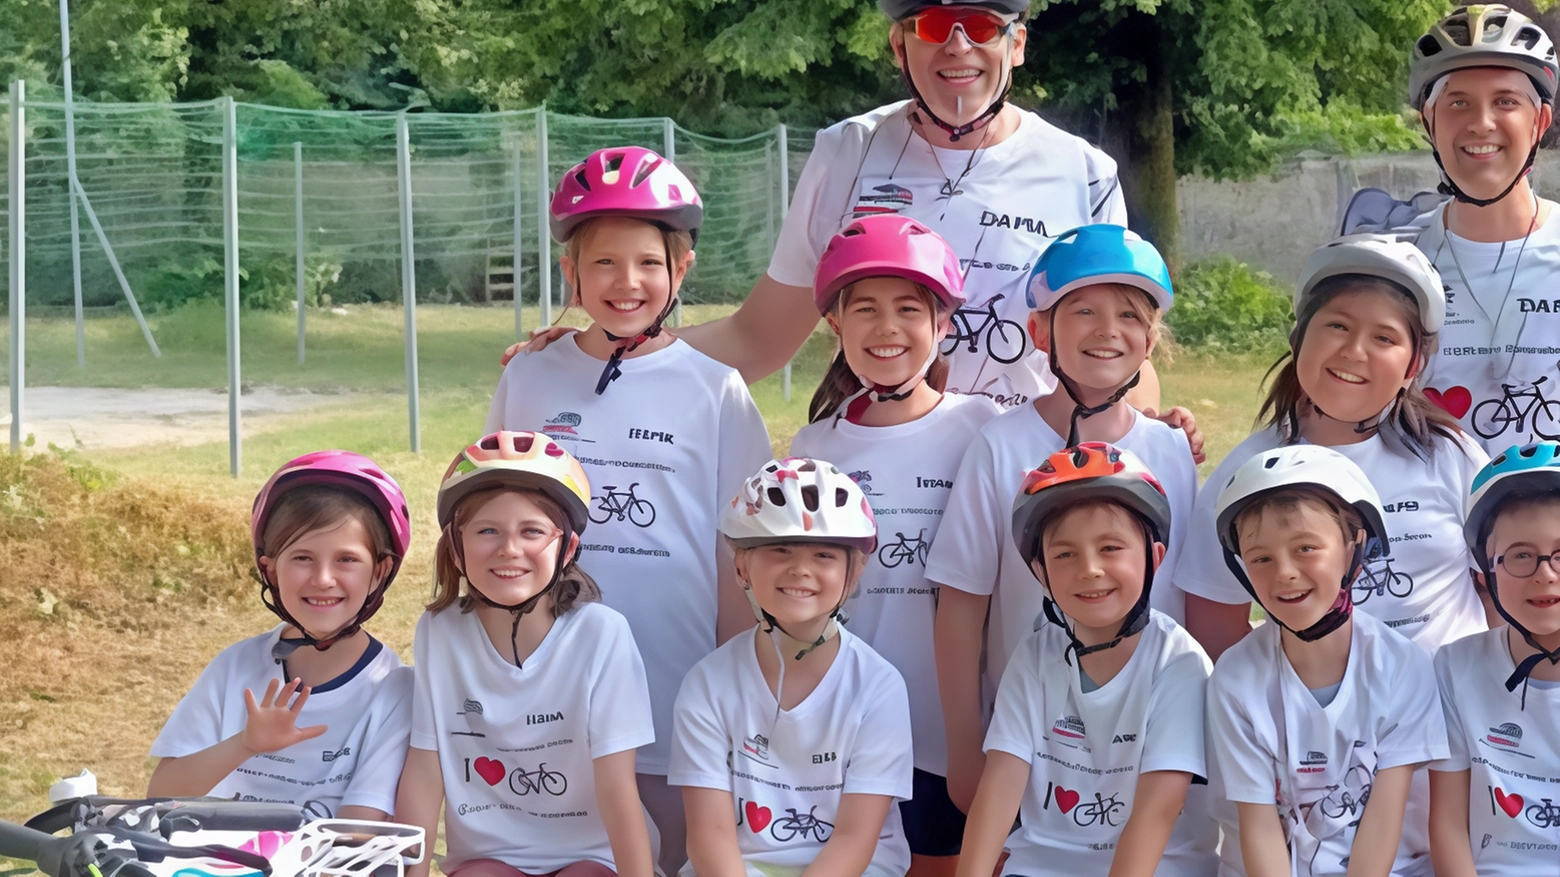 Alla prima edizione del Trofeo Koinè-System Cars-Mem Londoni a Monza, circa 600 ragazzi hanno partecipato a gare ciclistiche supportate da autorità e tecnici locali, promuovendo lo sport e la collaborazione tra scuola e comunità.